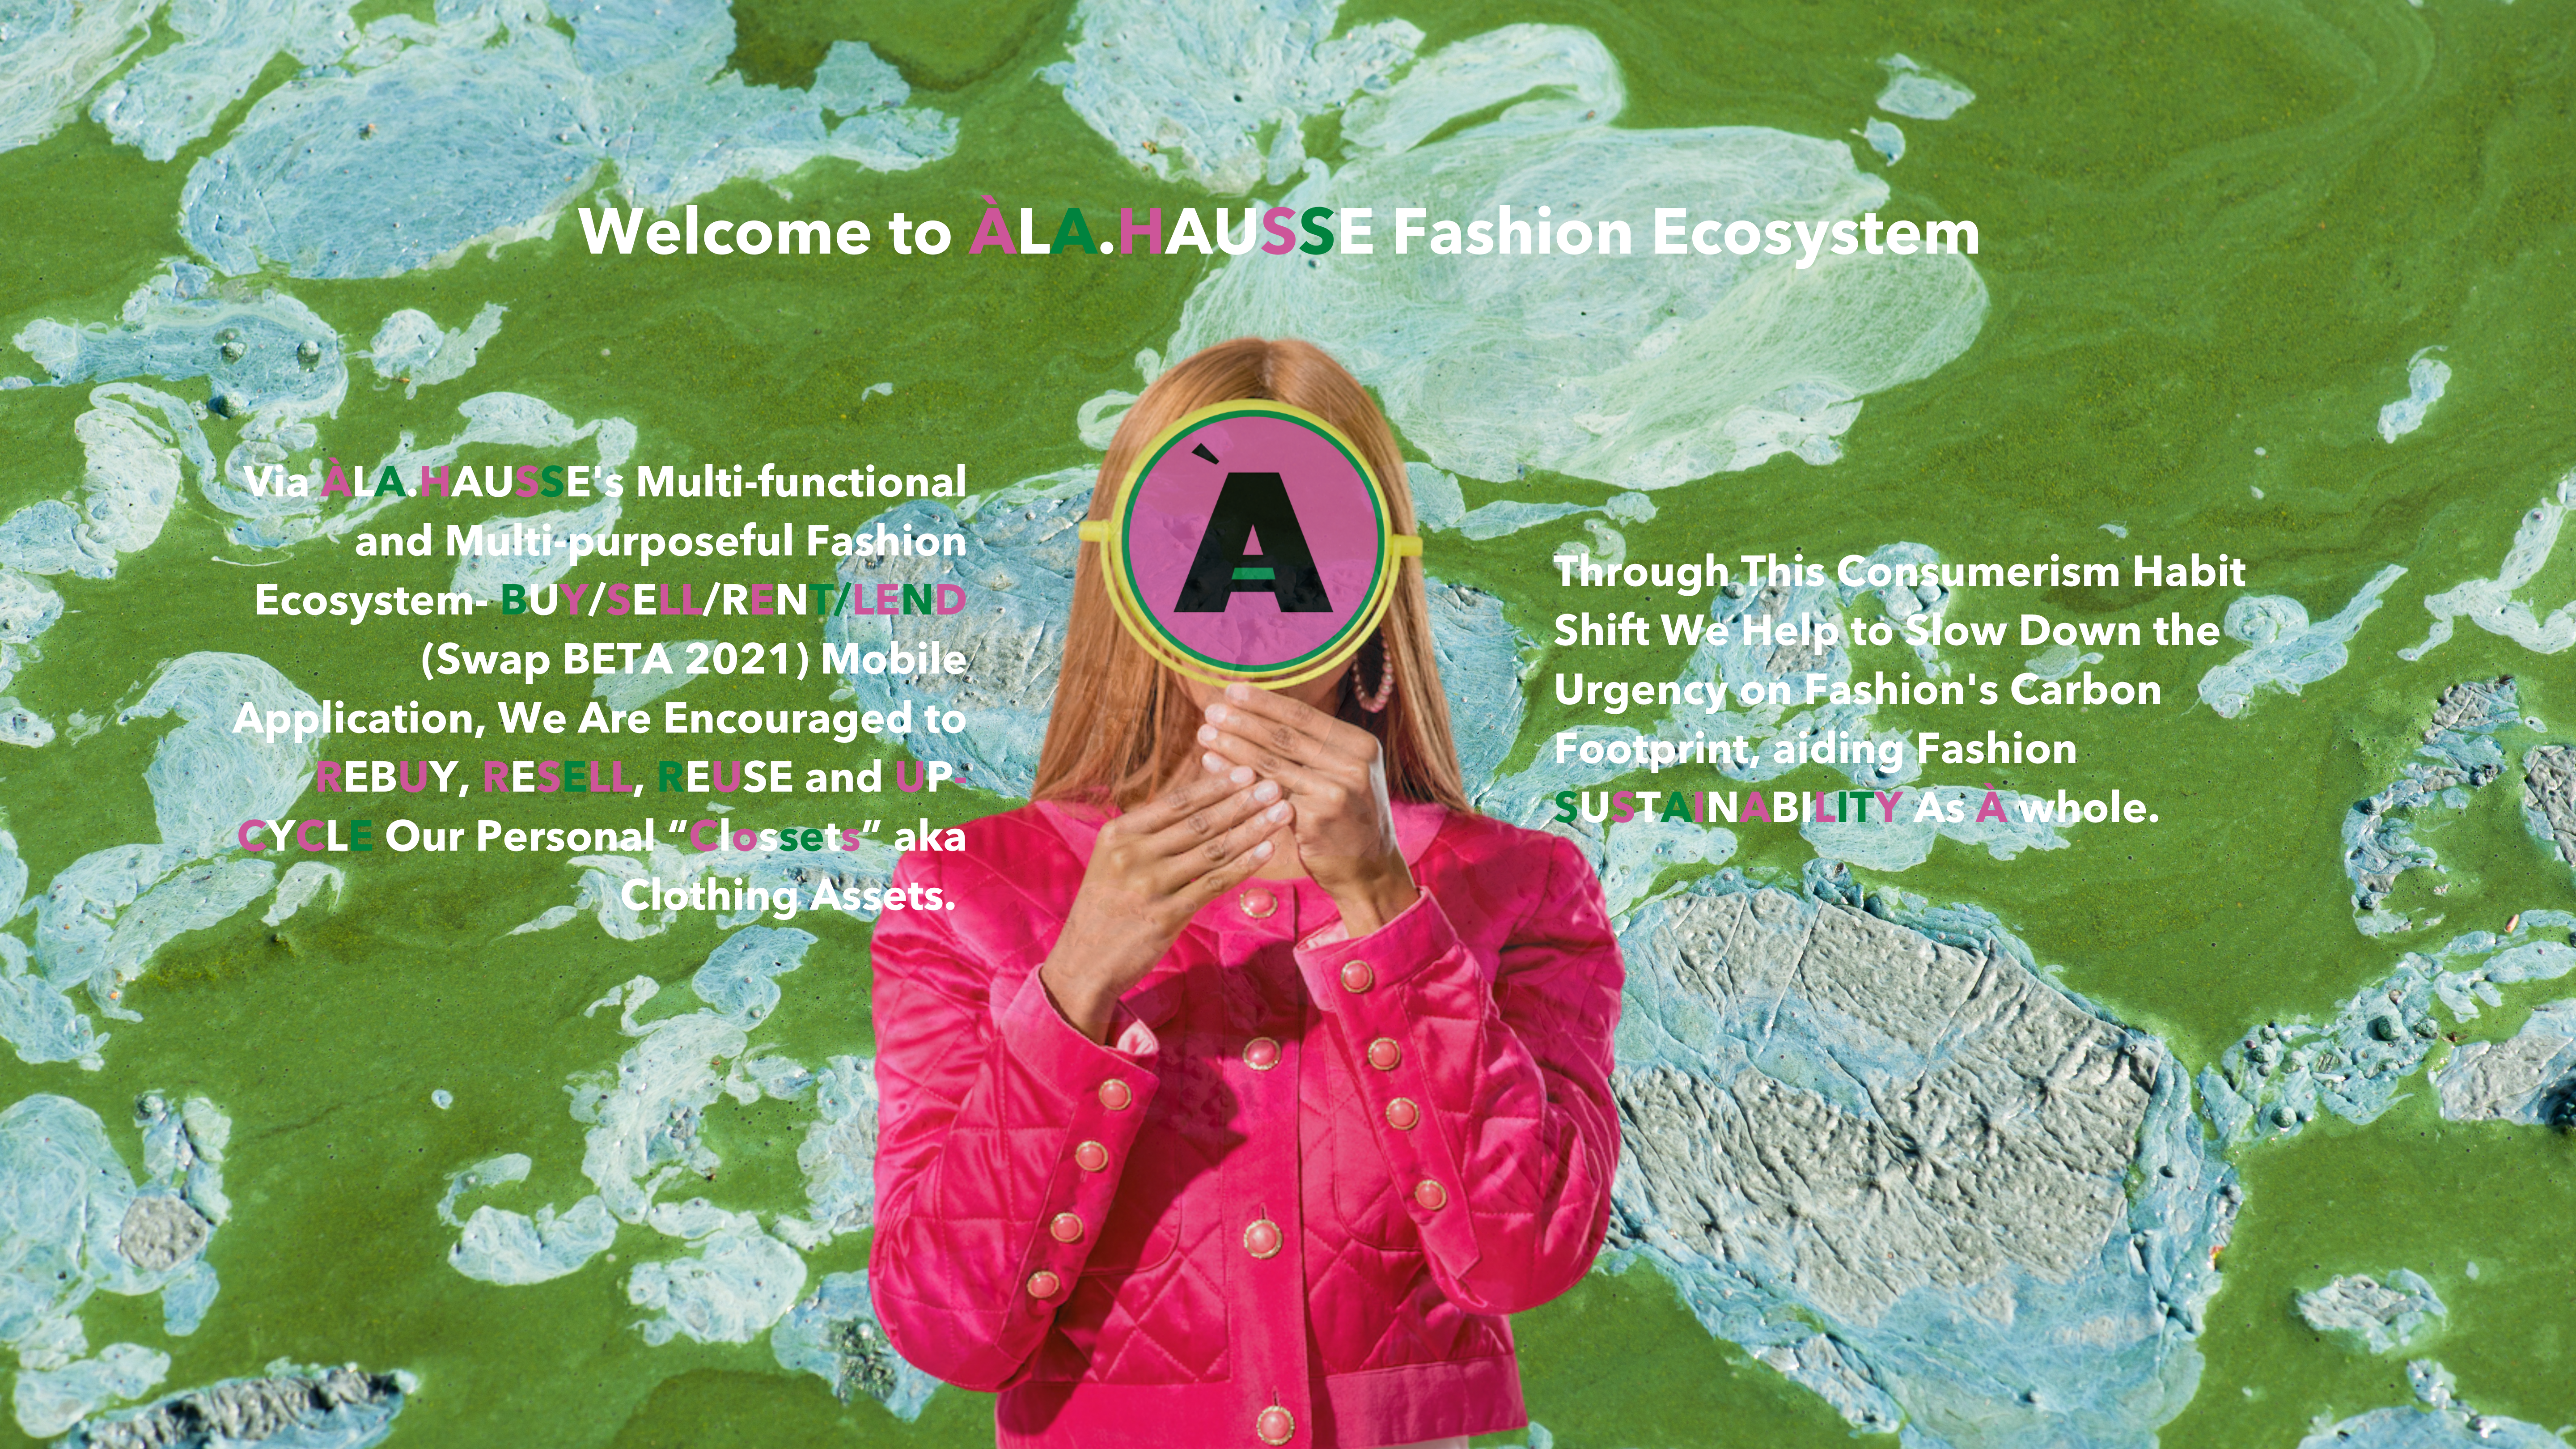 ÀLA.HAUSSE Fashion Ecosystem